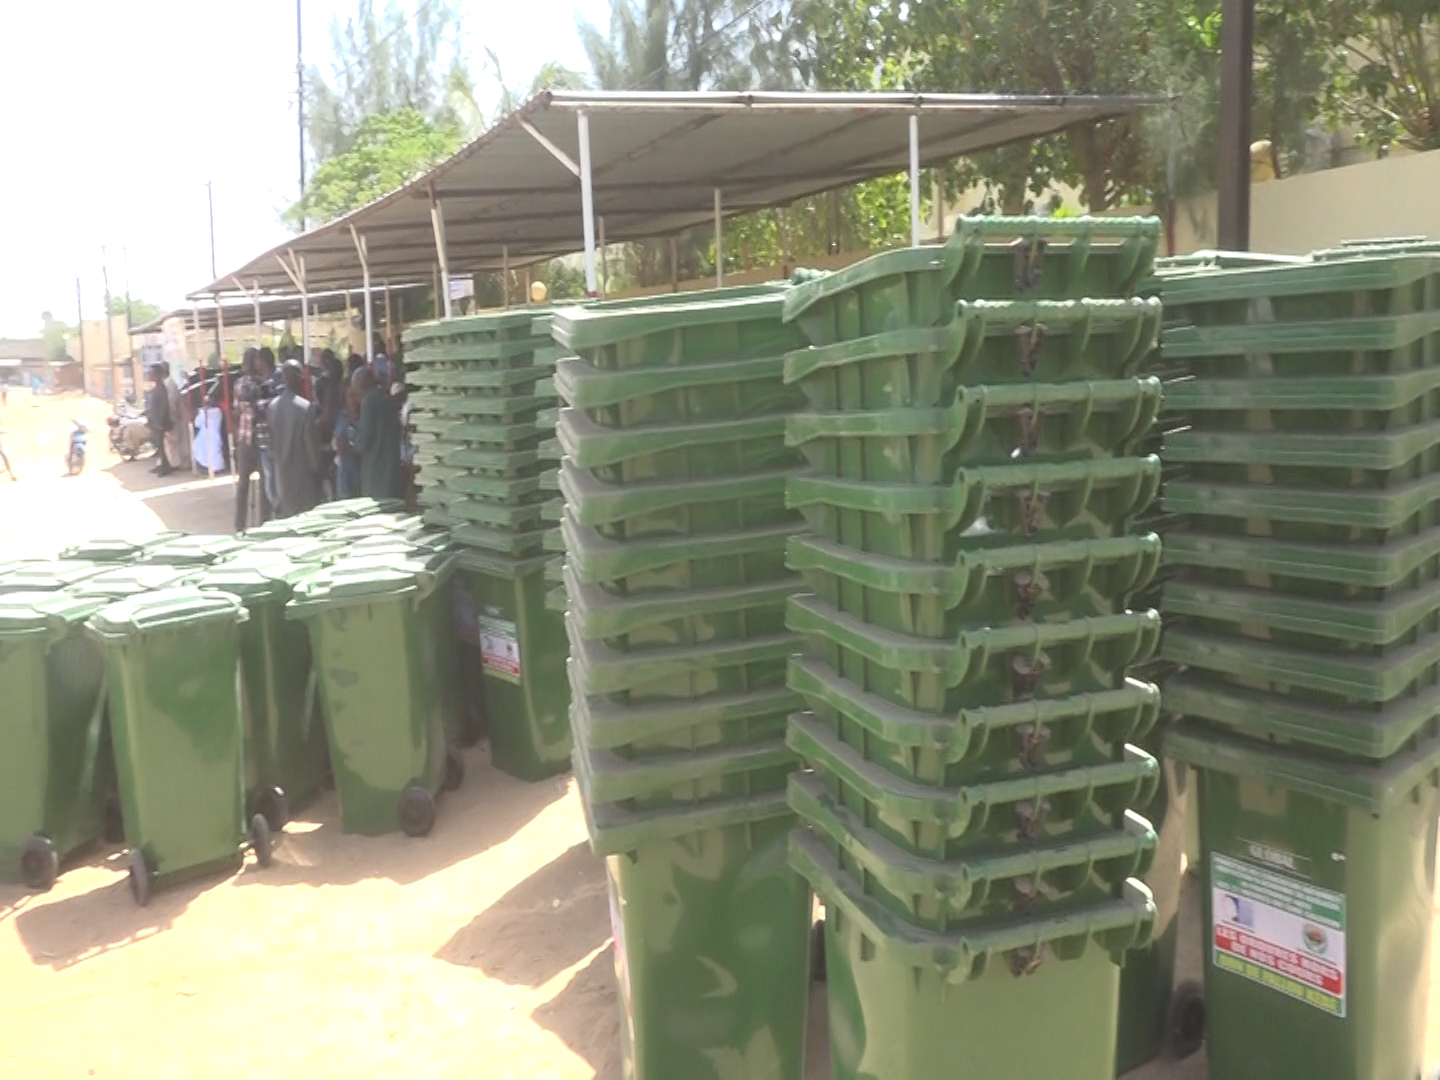 Kaolack / Images : Fallou Kébé offre un lot de 50 bacs à ordures à l’école de police 